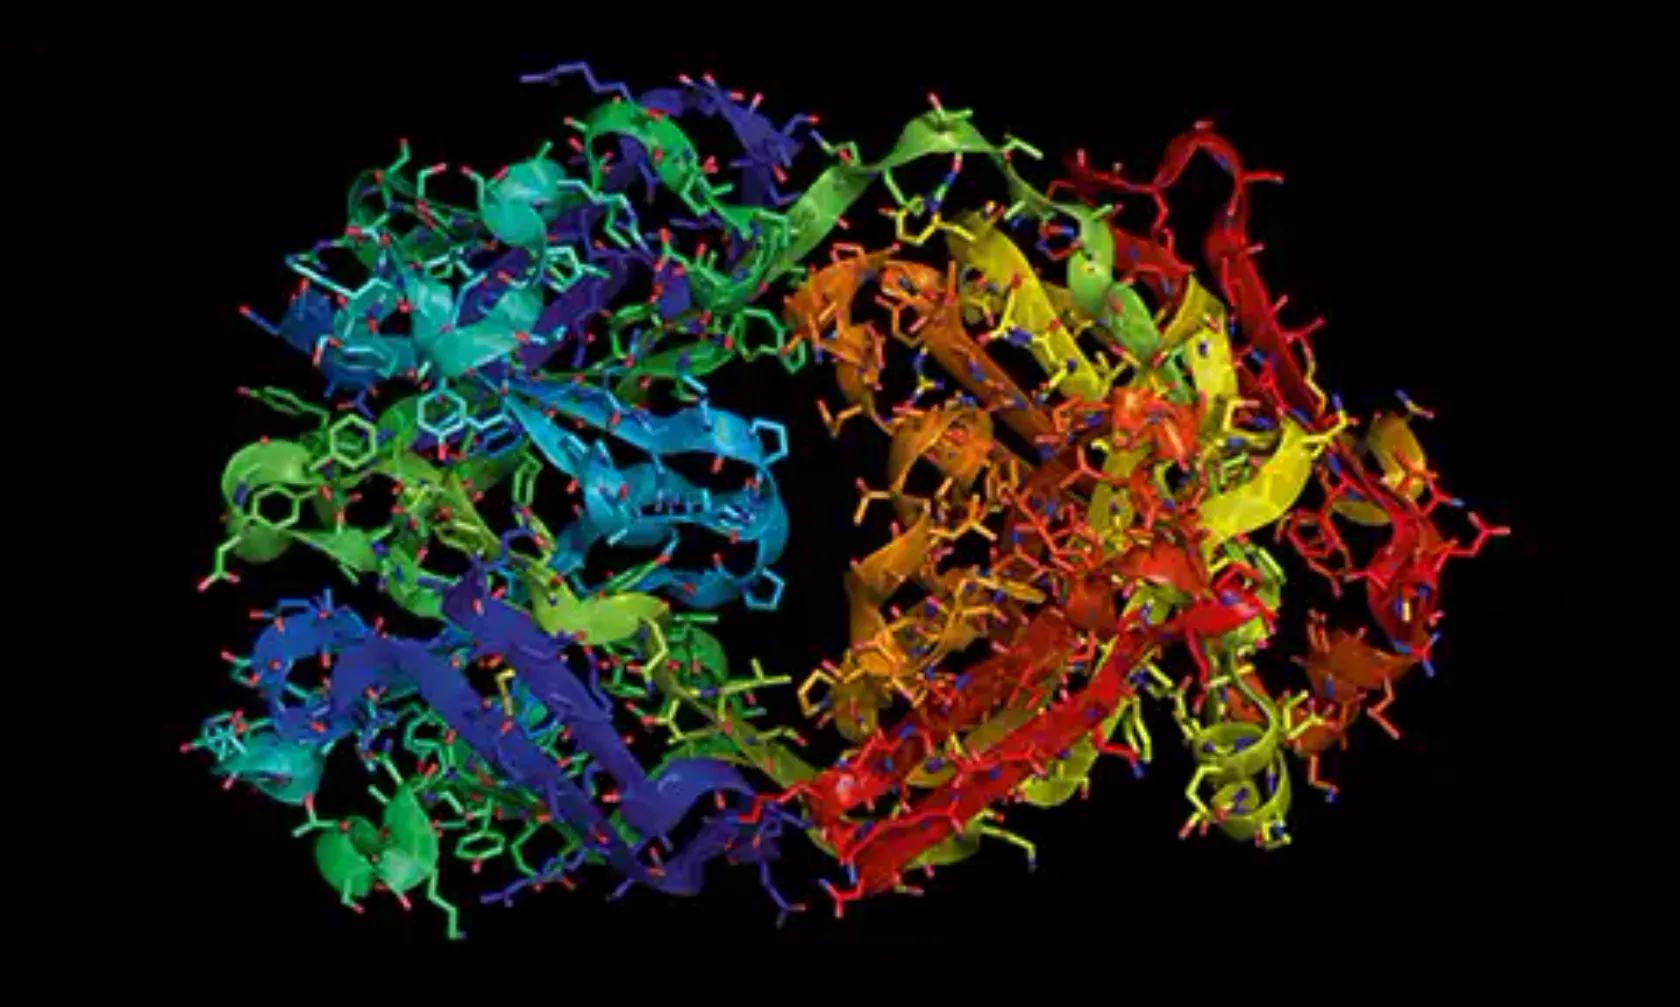 Farbiges Molekül-Knäuel, das für Herceptin steht.